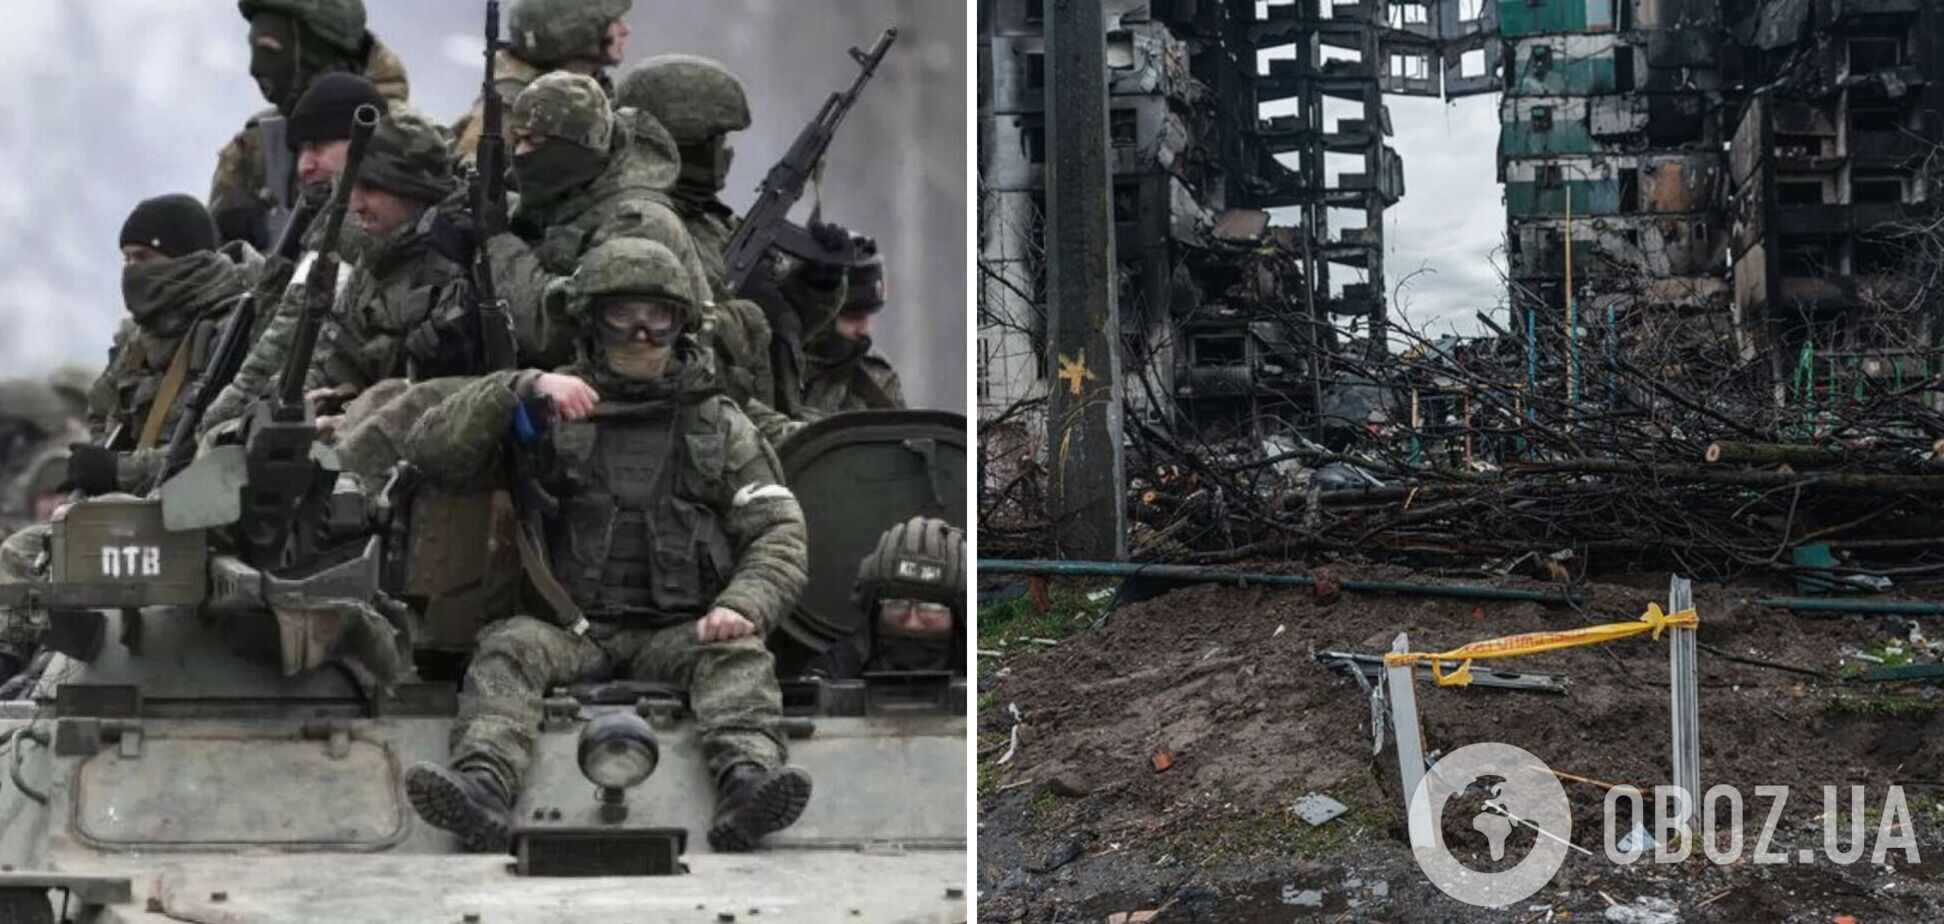 'Спокойный, как Чикатило': оккупант с психическими расстройствами заявил матери, что ему нравится воевать в Украине. Аудио